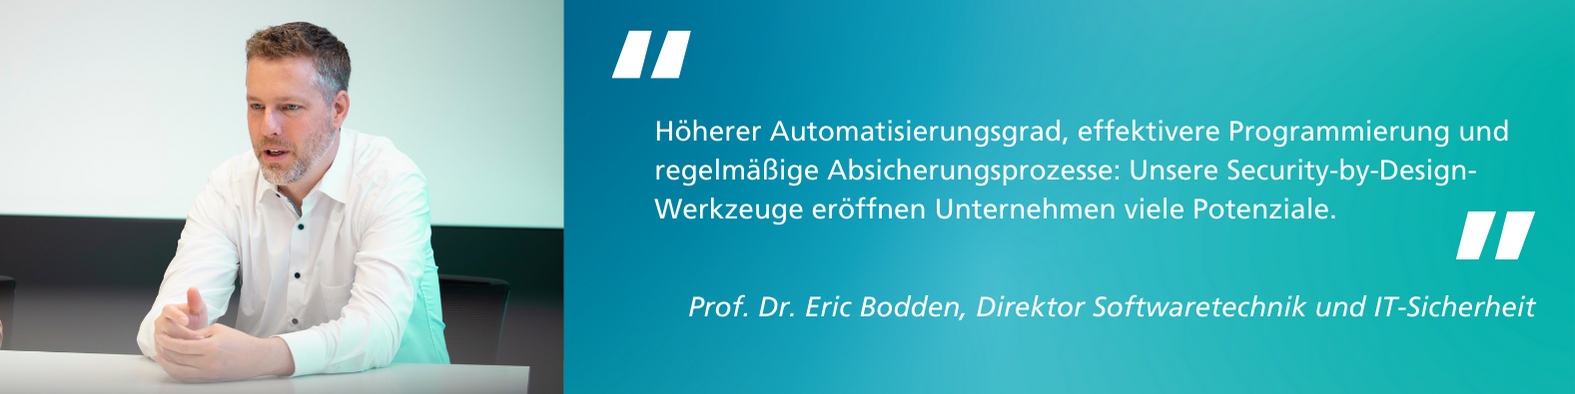 Zitat von Prof. Dr. Eric Bodden